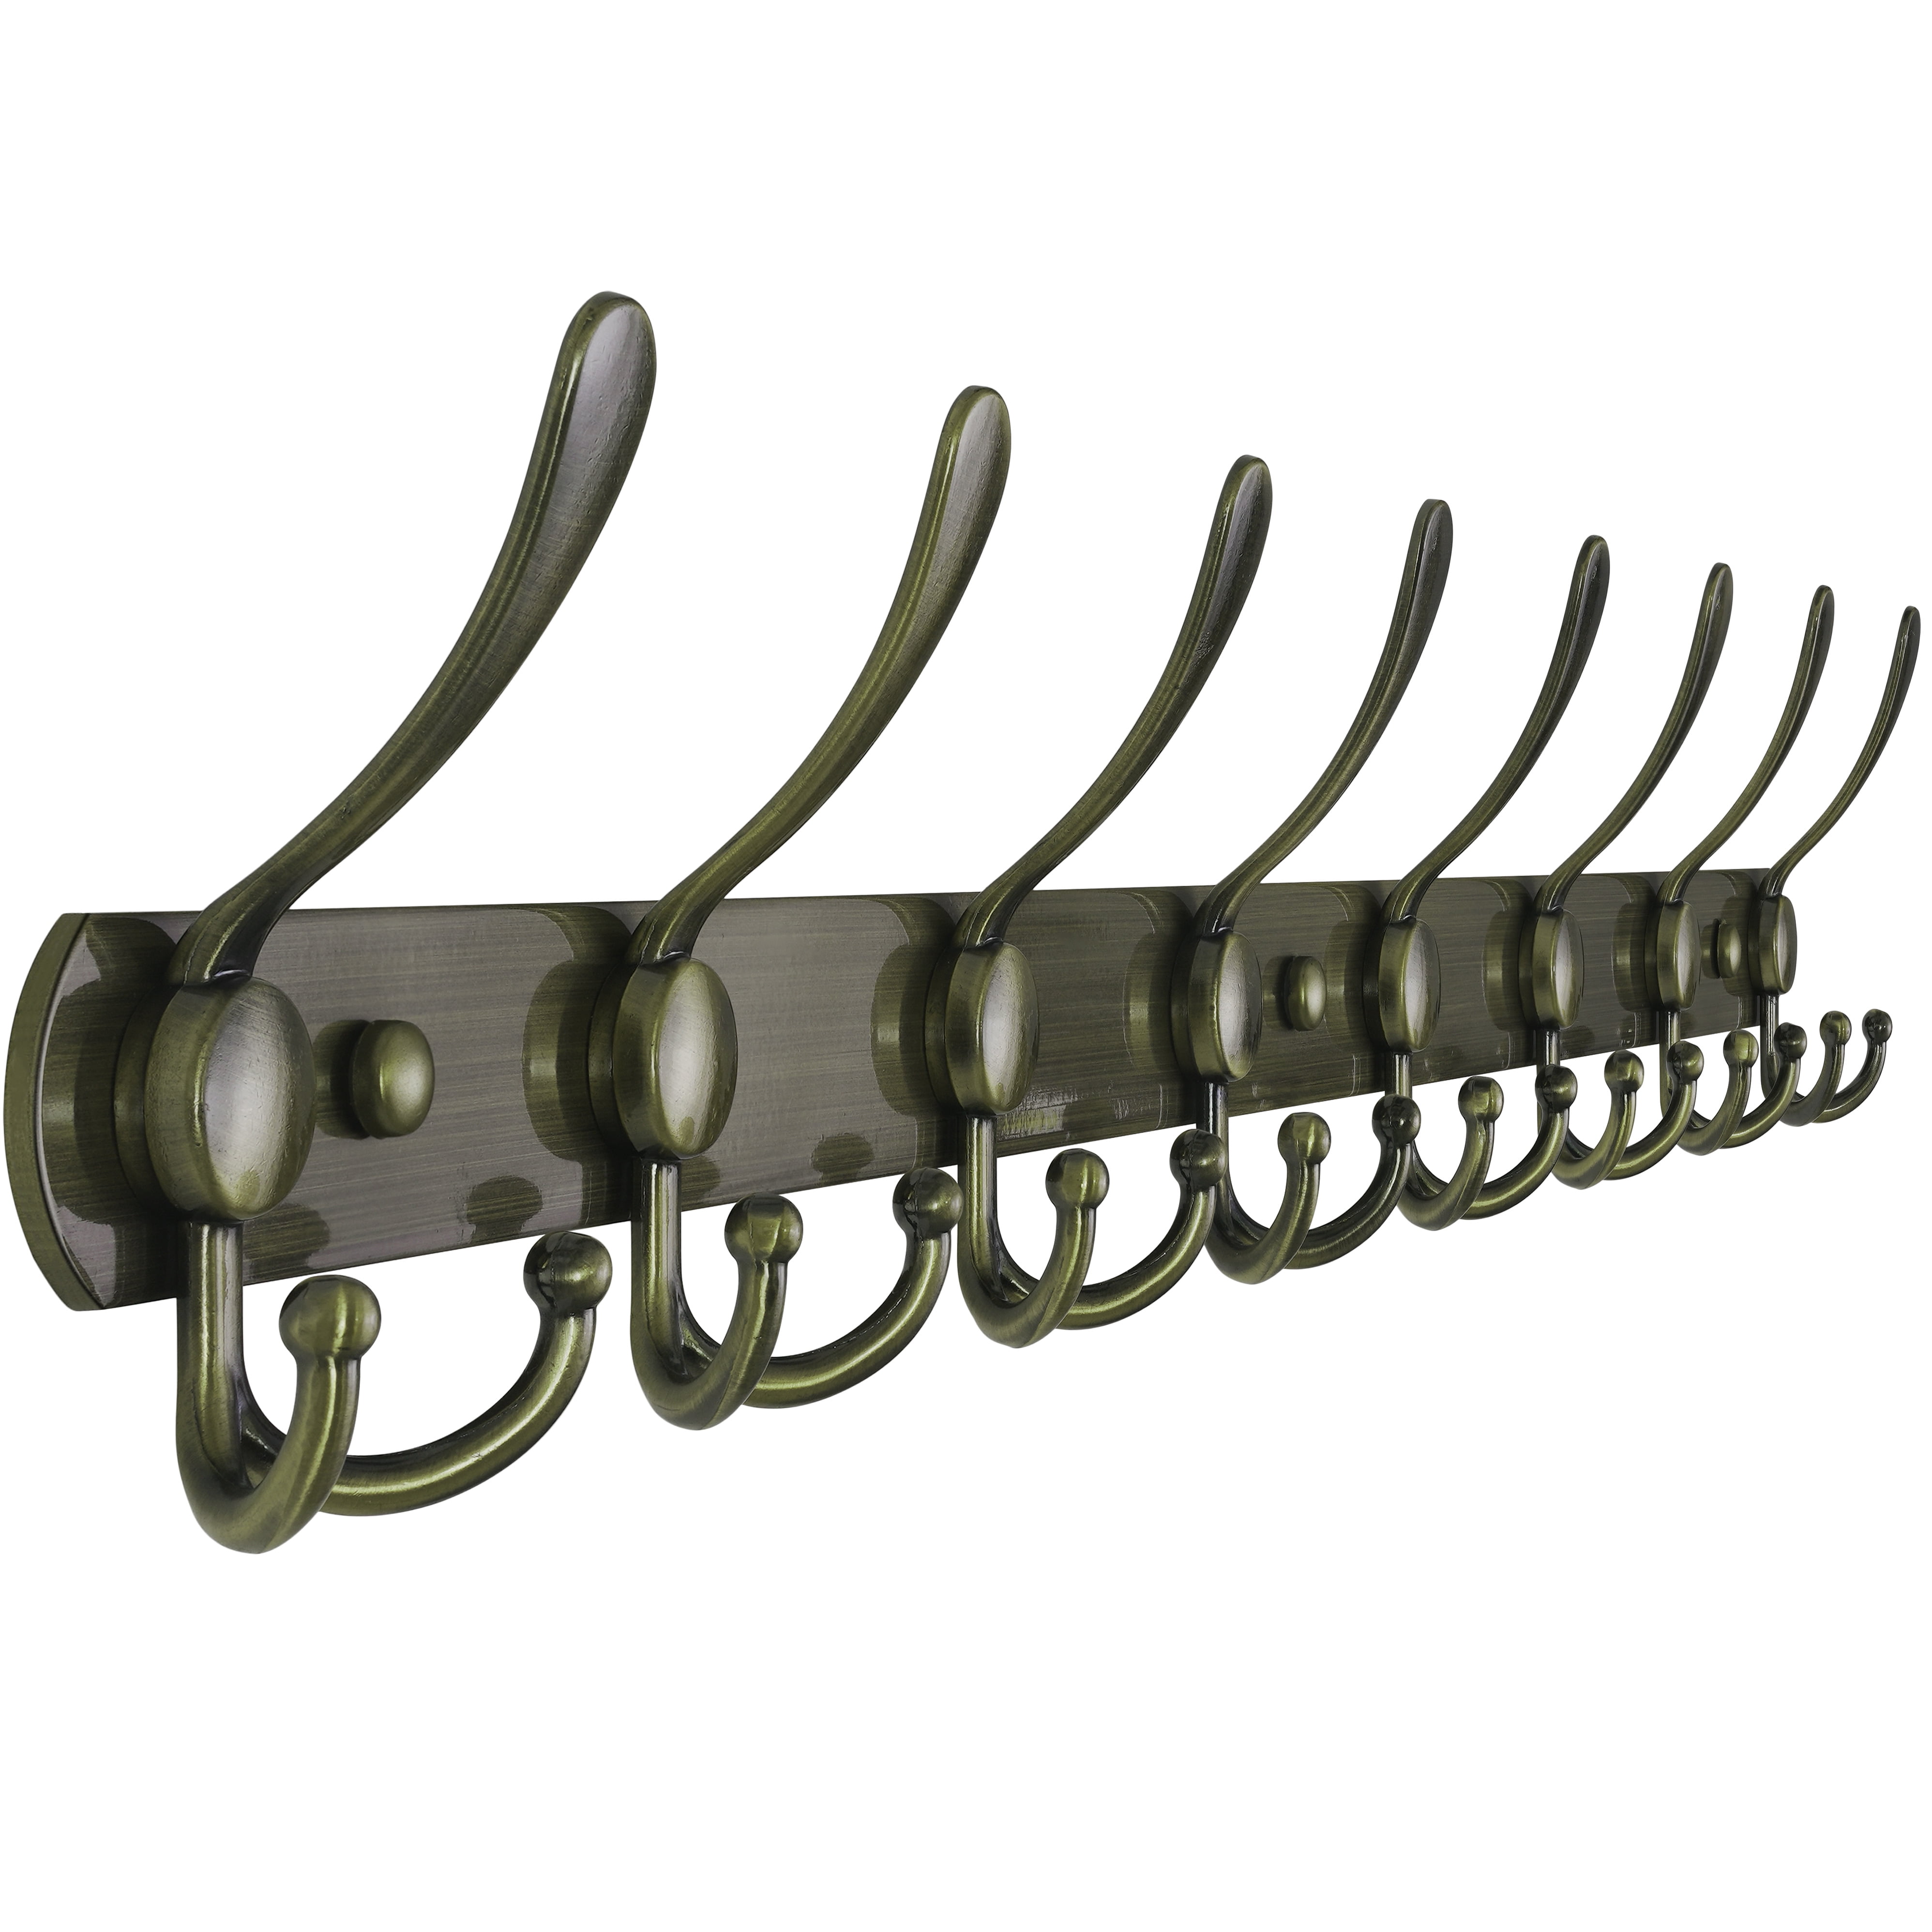 Dseap Coat Rack Wall Mounted-8 Tri Hooks,Stainless Steel Heavy